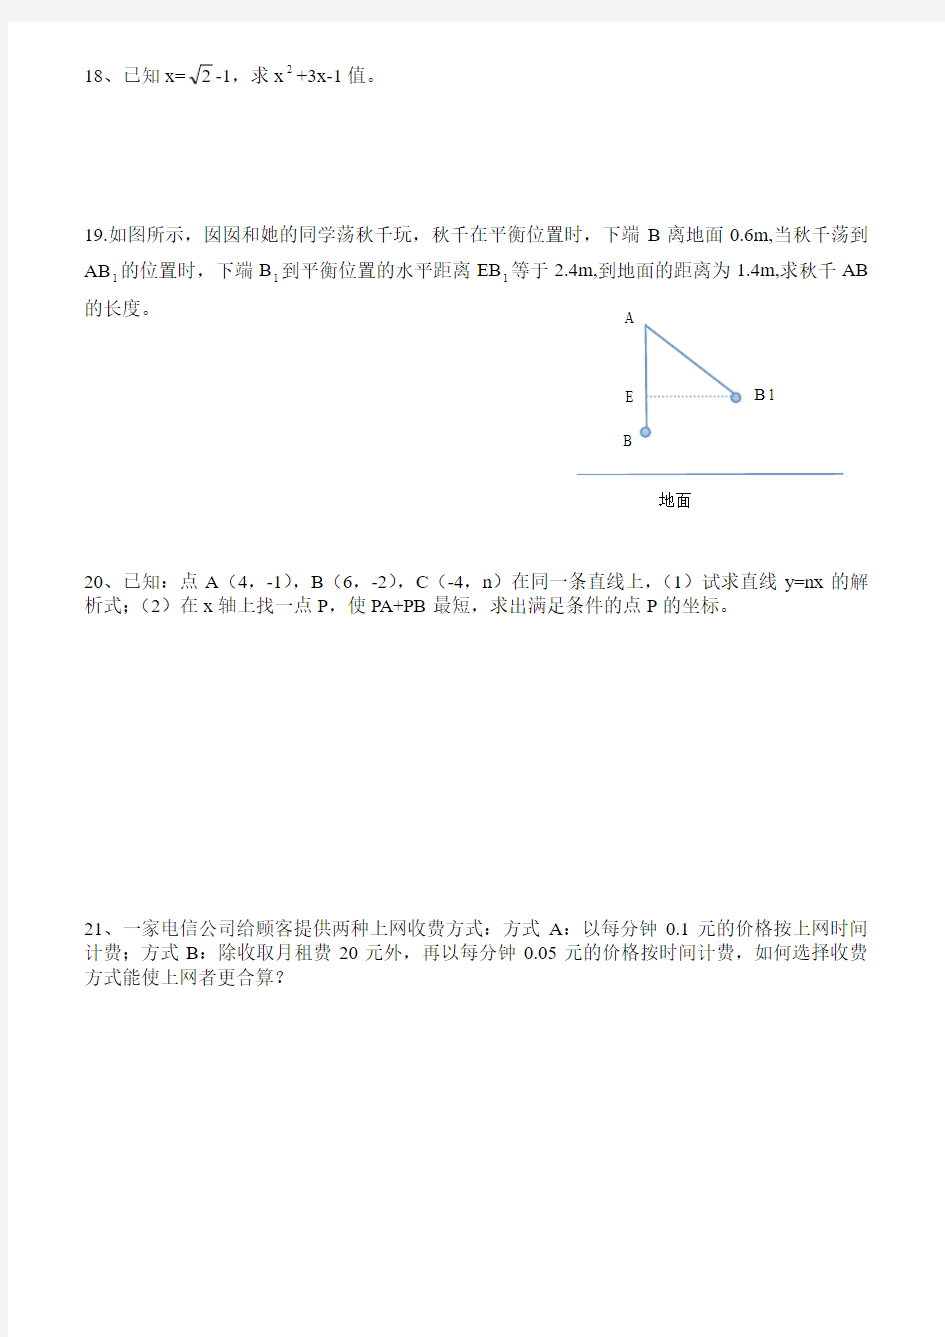 深圳市昂立教育八年级数学第9周周末作业